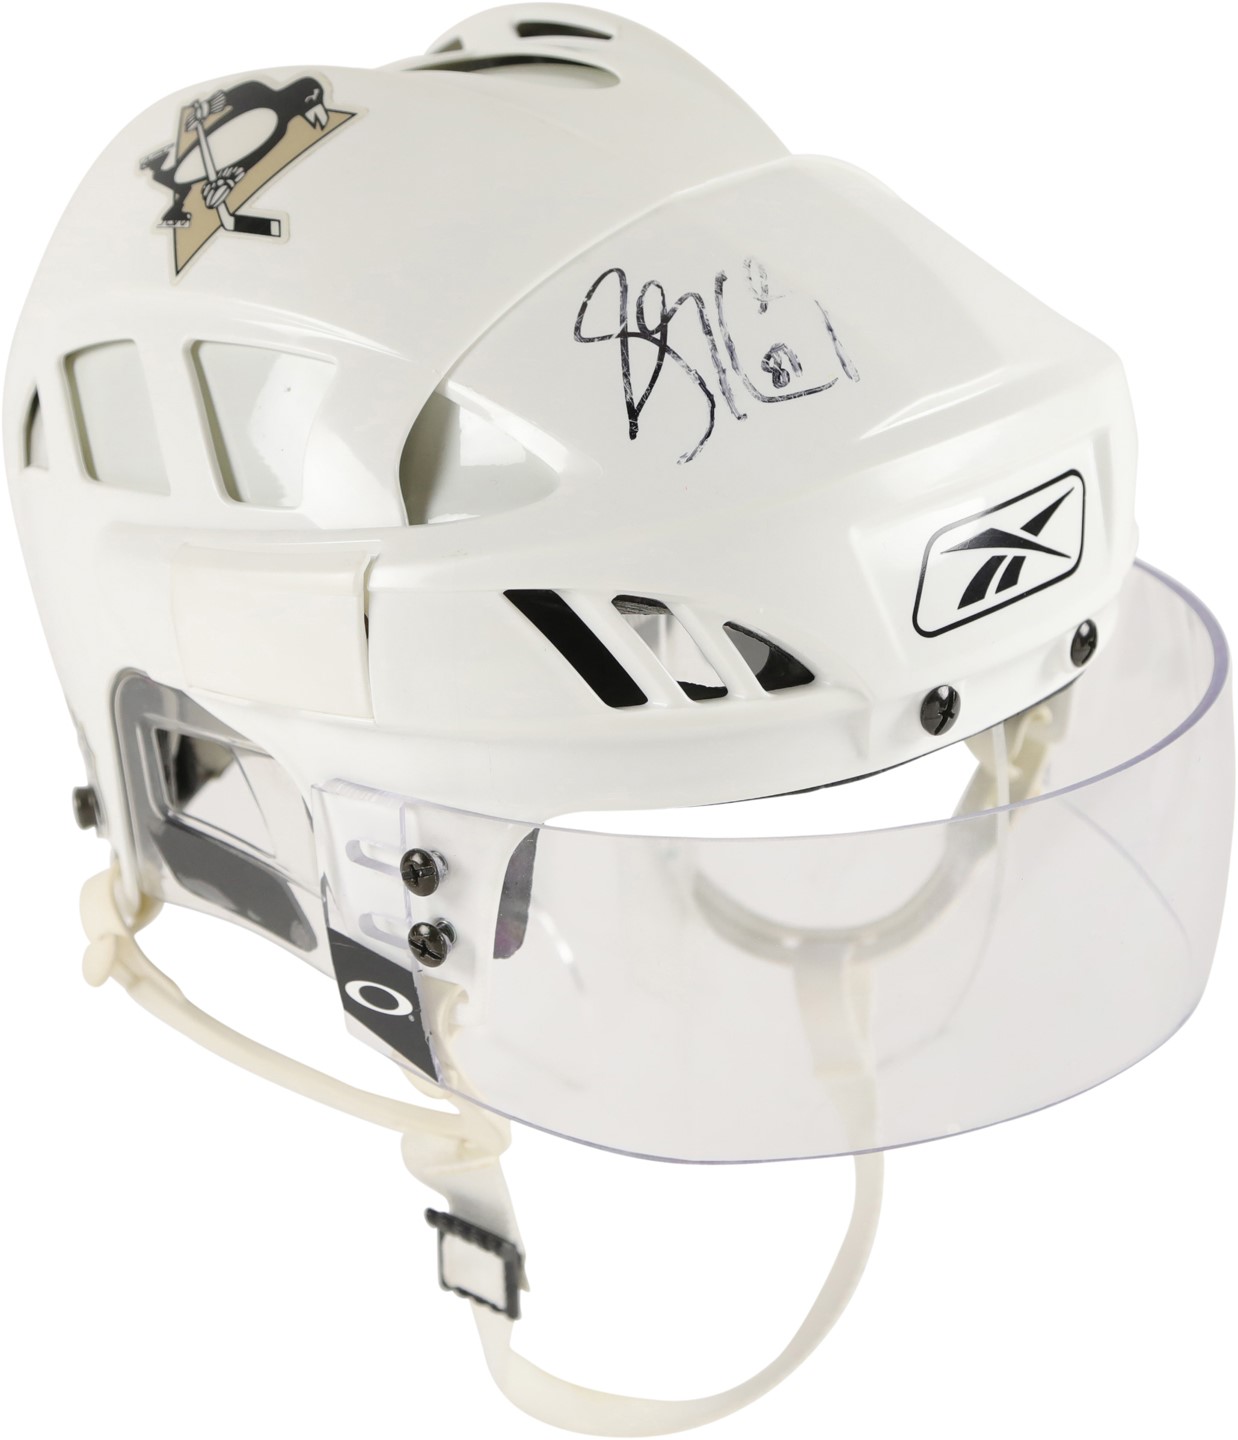 2005-06 Sidney Crosby Pittsburgh Penguins Signed Game Worn Rookie Helmet (Joe Toman LOA)